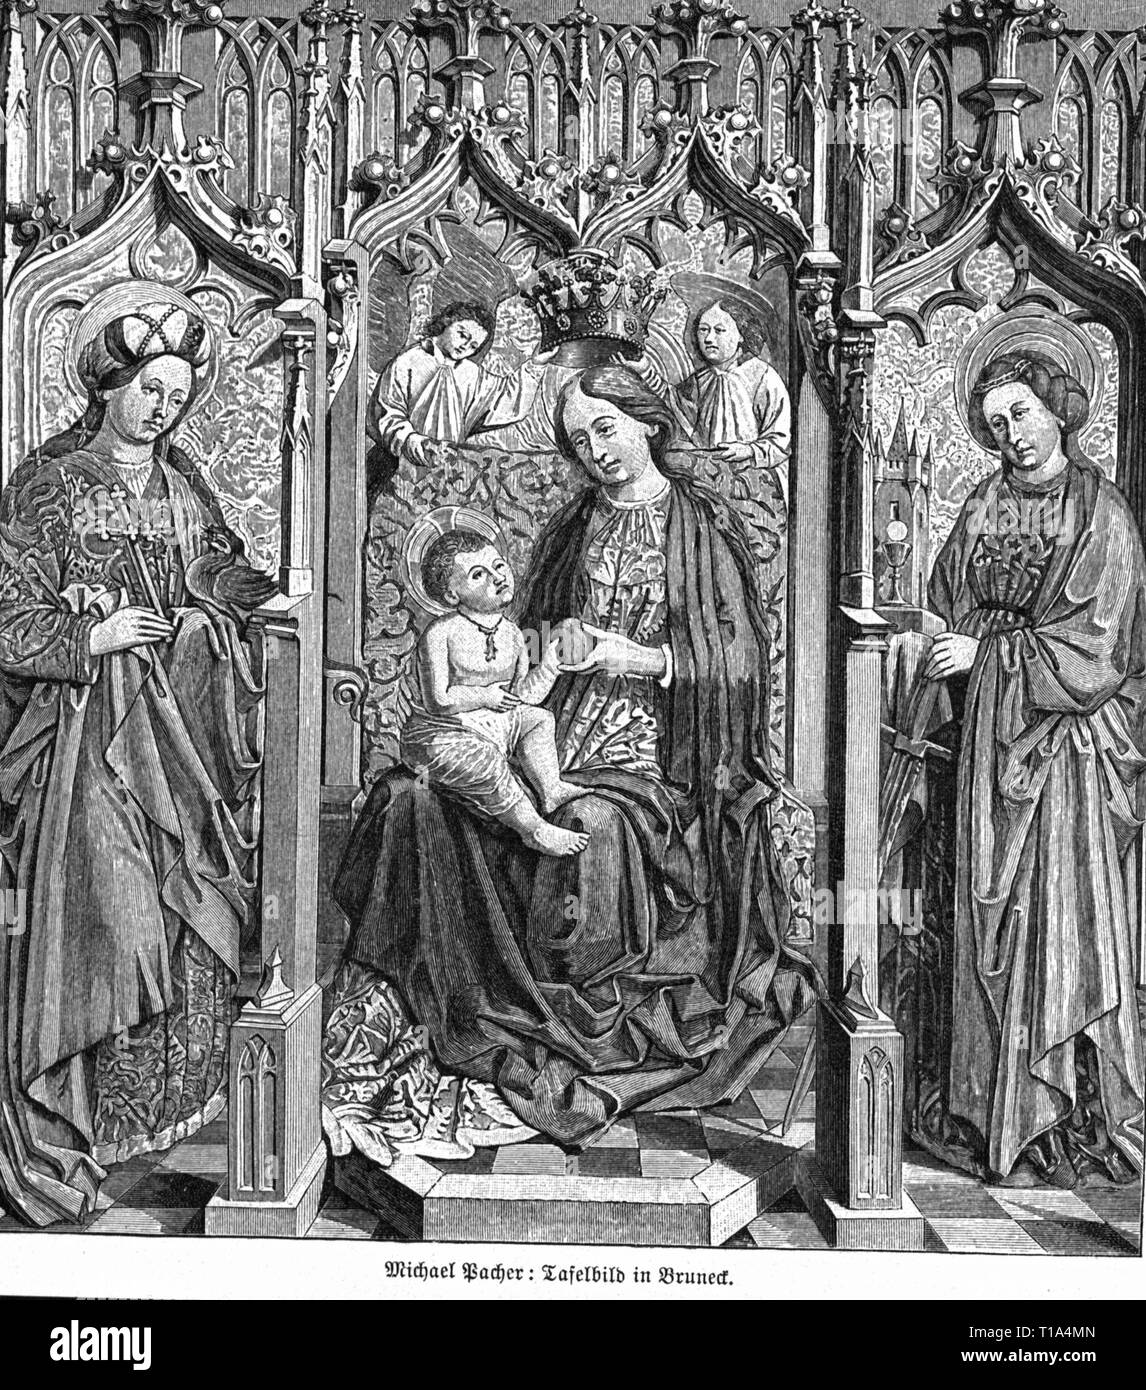 La religion, le christianisme, Madonna / Marie avec l'enfant, peinture, de Michael Pacher (vers 1435 - 1498), 15e siècle, Bruneck, gravure sur bois, 19e siècle, l'artiste n'a pas d'auteur pour être effacé Banque D'Images